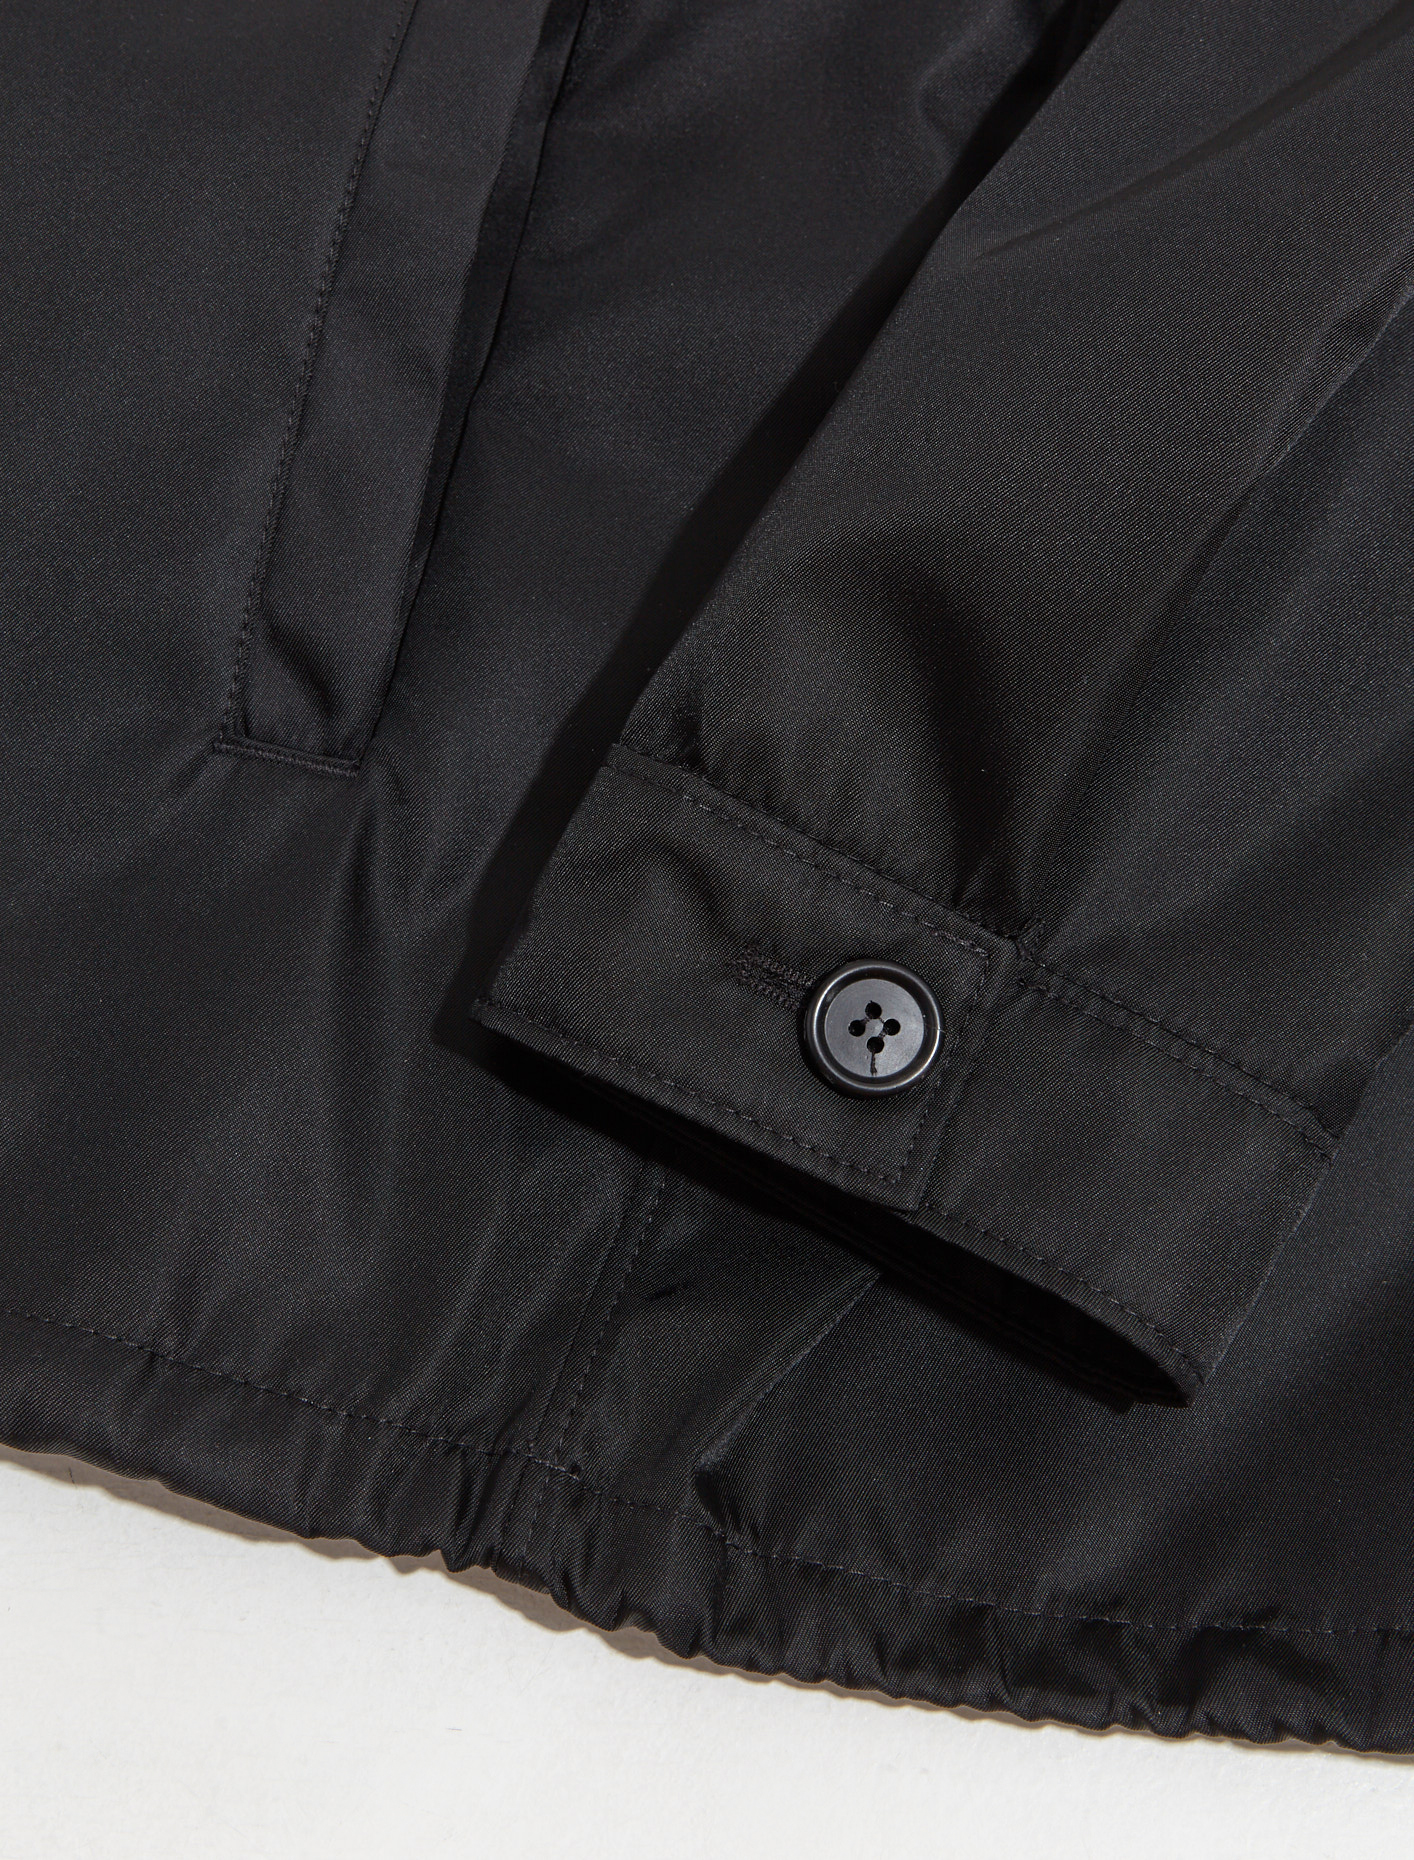 Prada Re-Nylon Blouson Jacket in Black | Voo Store Berlin | Worldwide ...